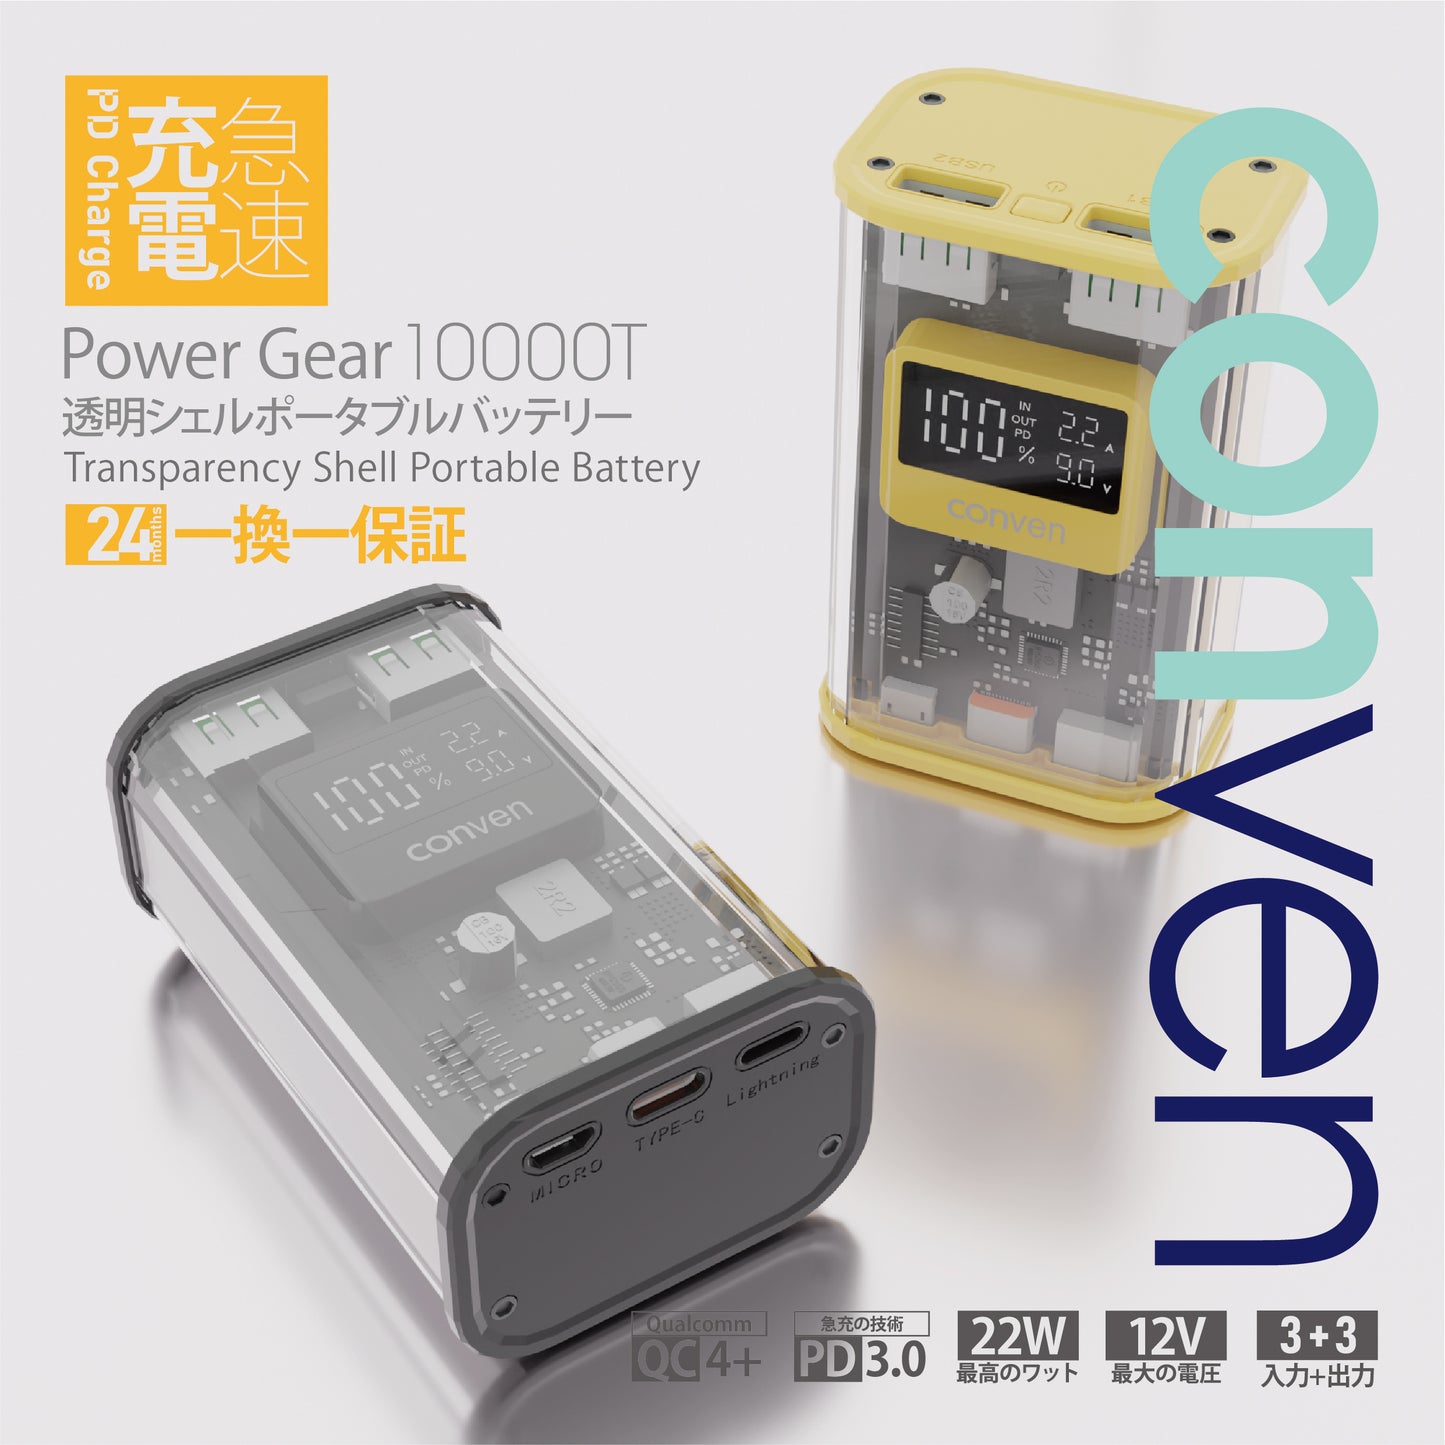 Power Gear 10000T透明便攜電池